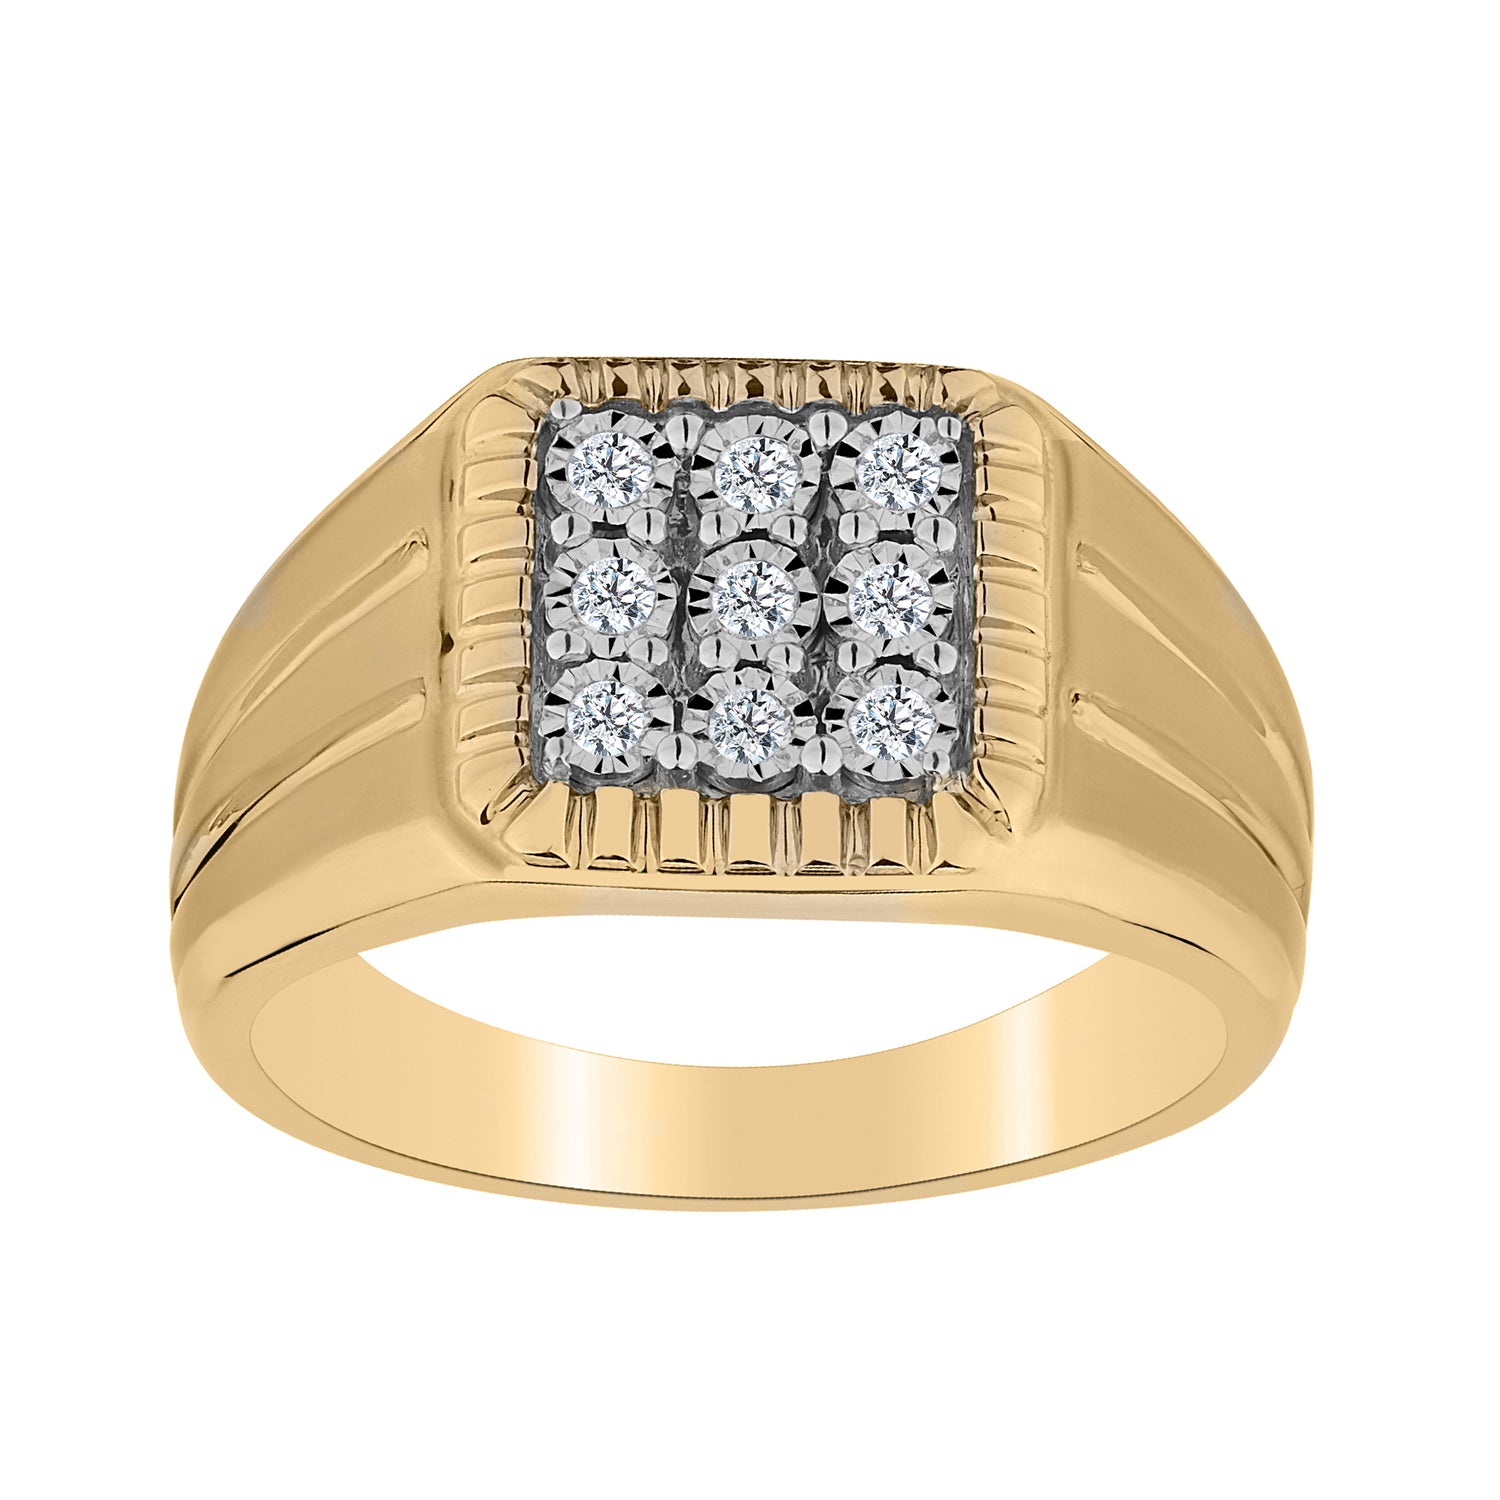 .20 Carat of Diamonds Gentleman's Ring, 10kt Yellow Gold.....................NOW